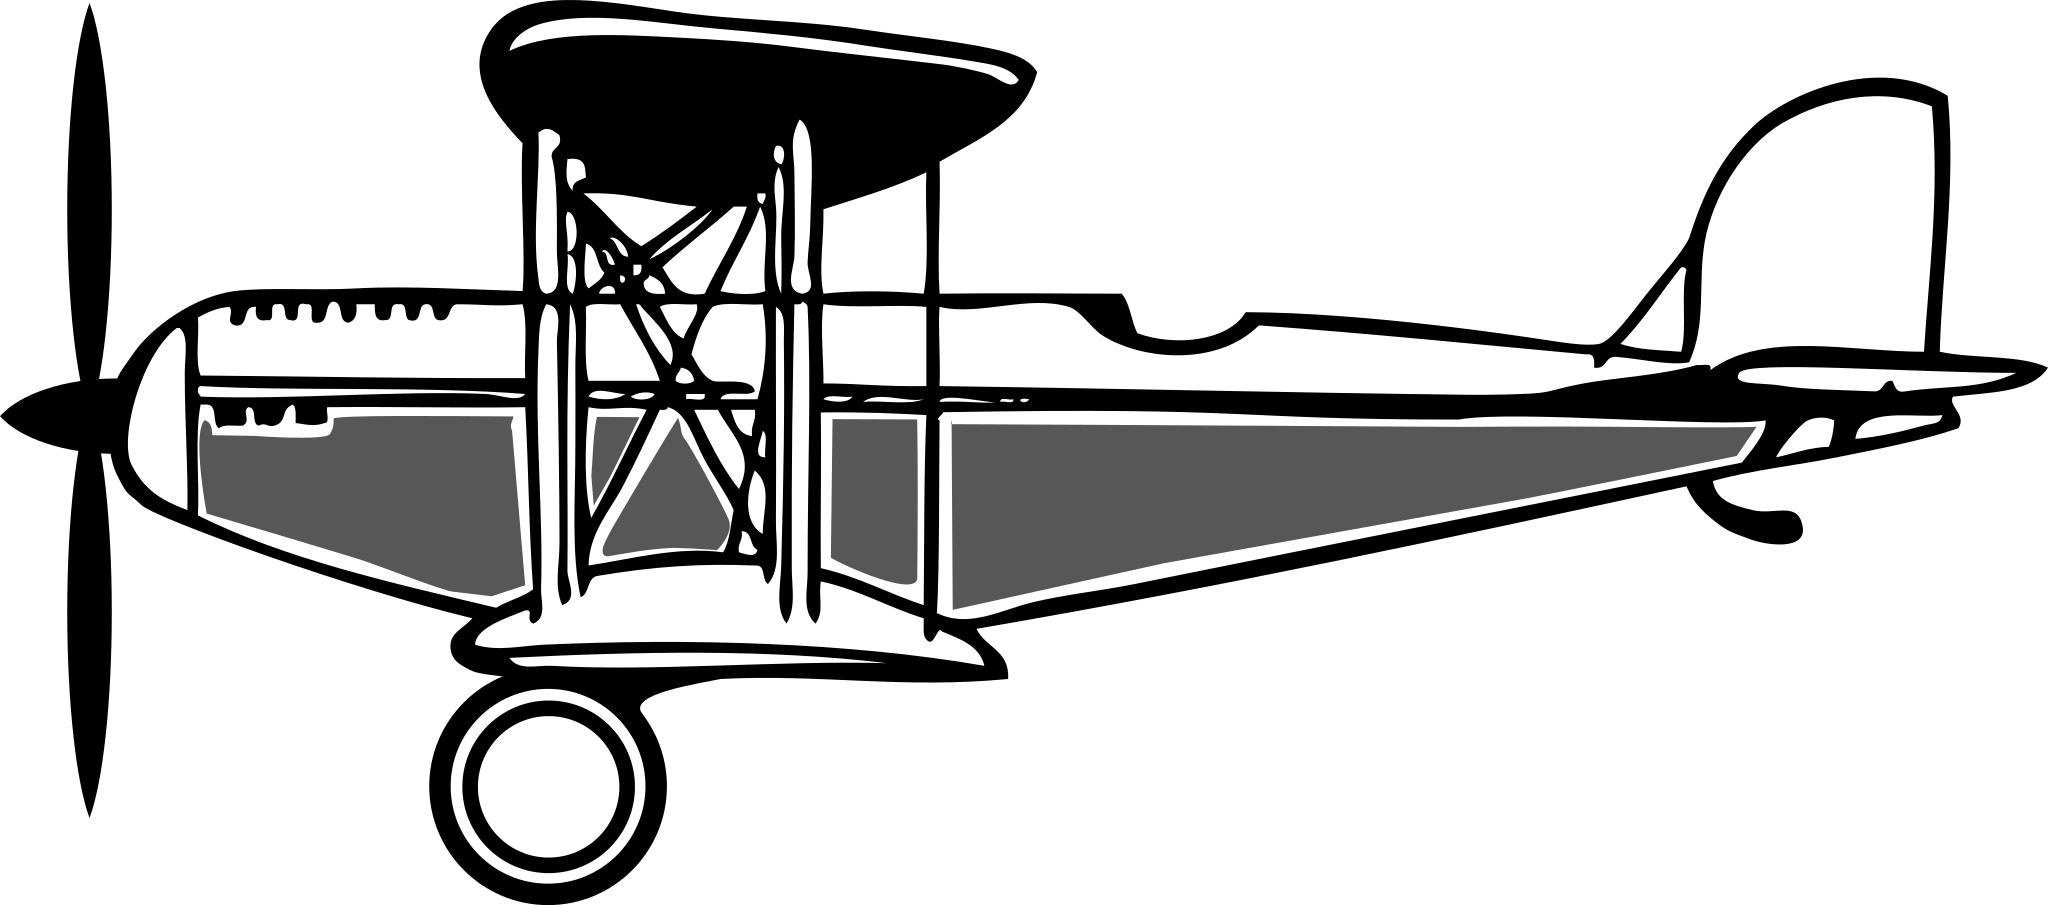 Самолет биплан вектор